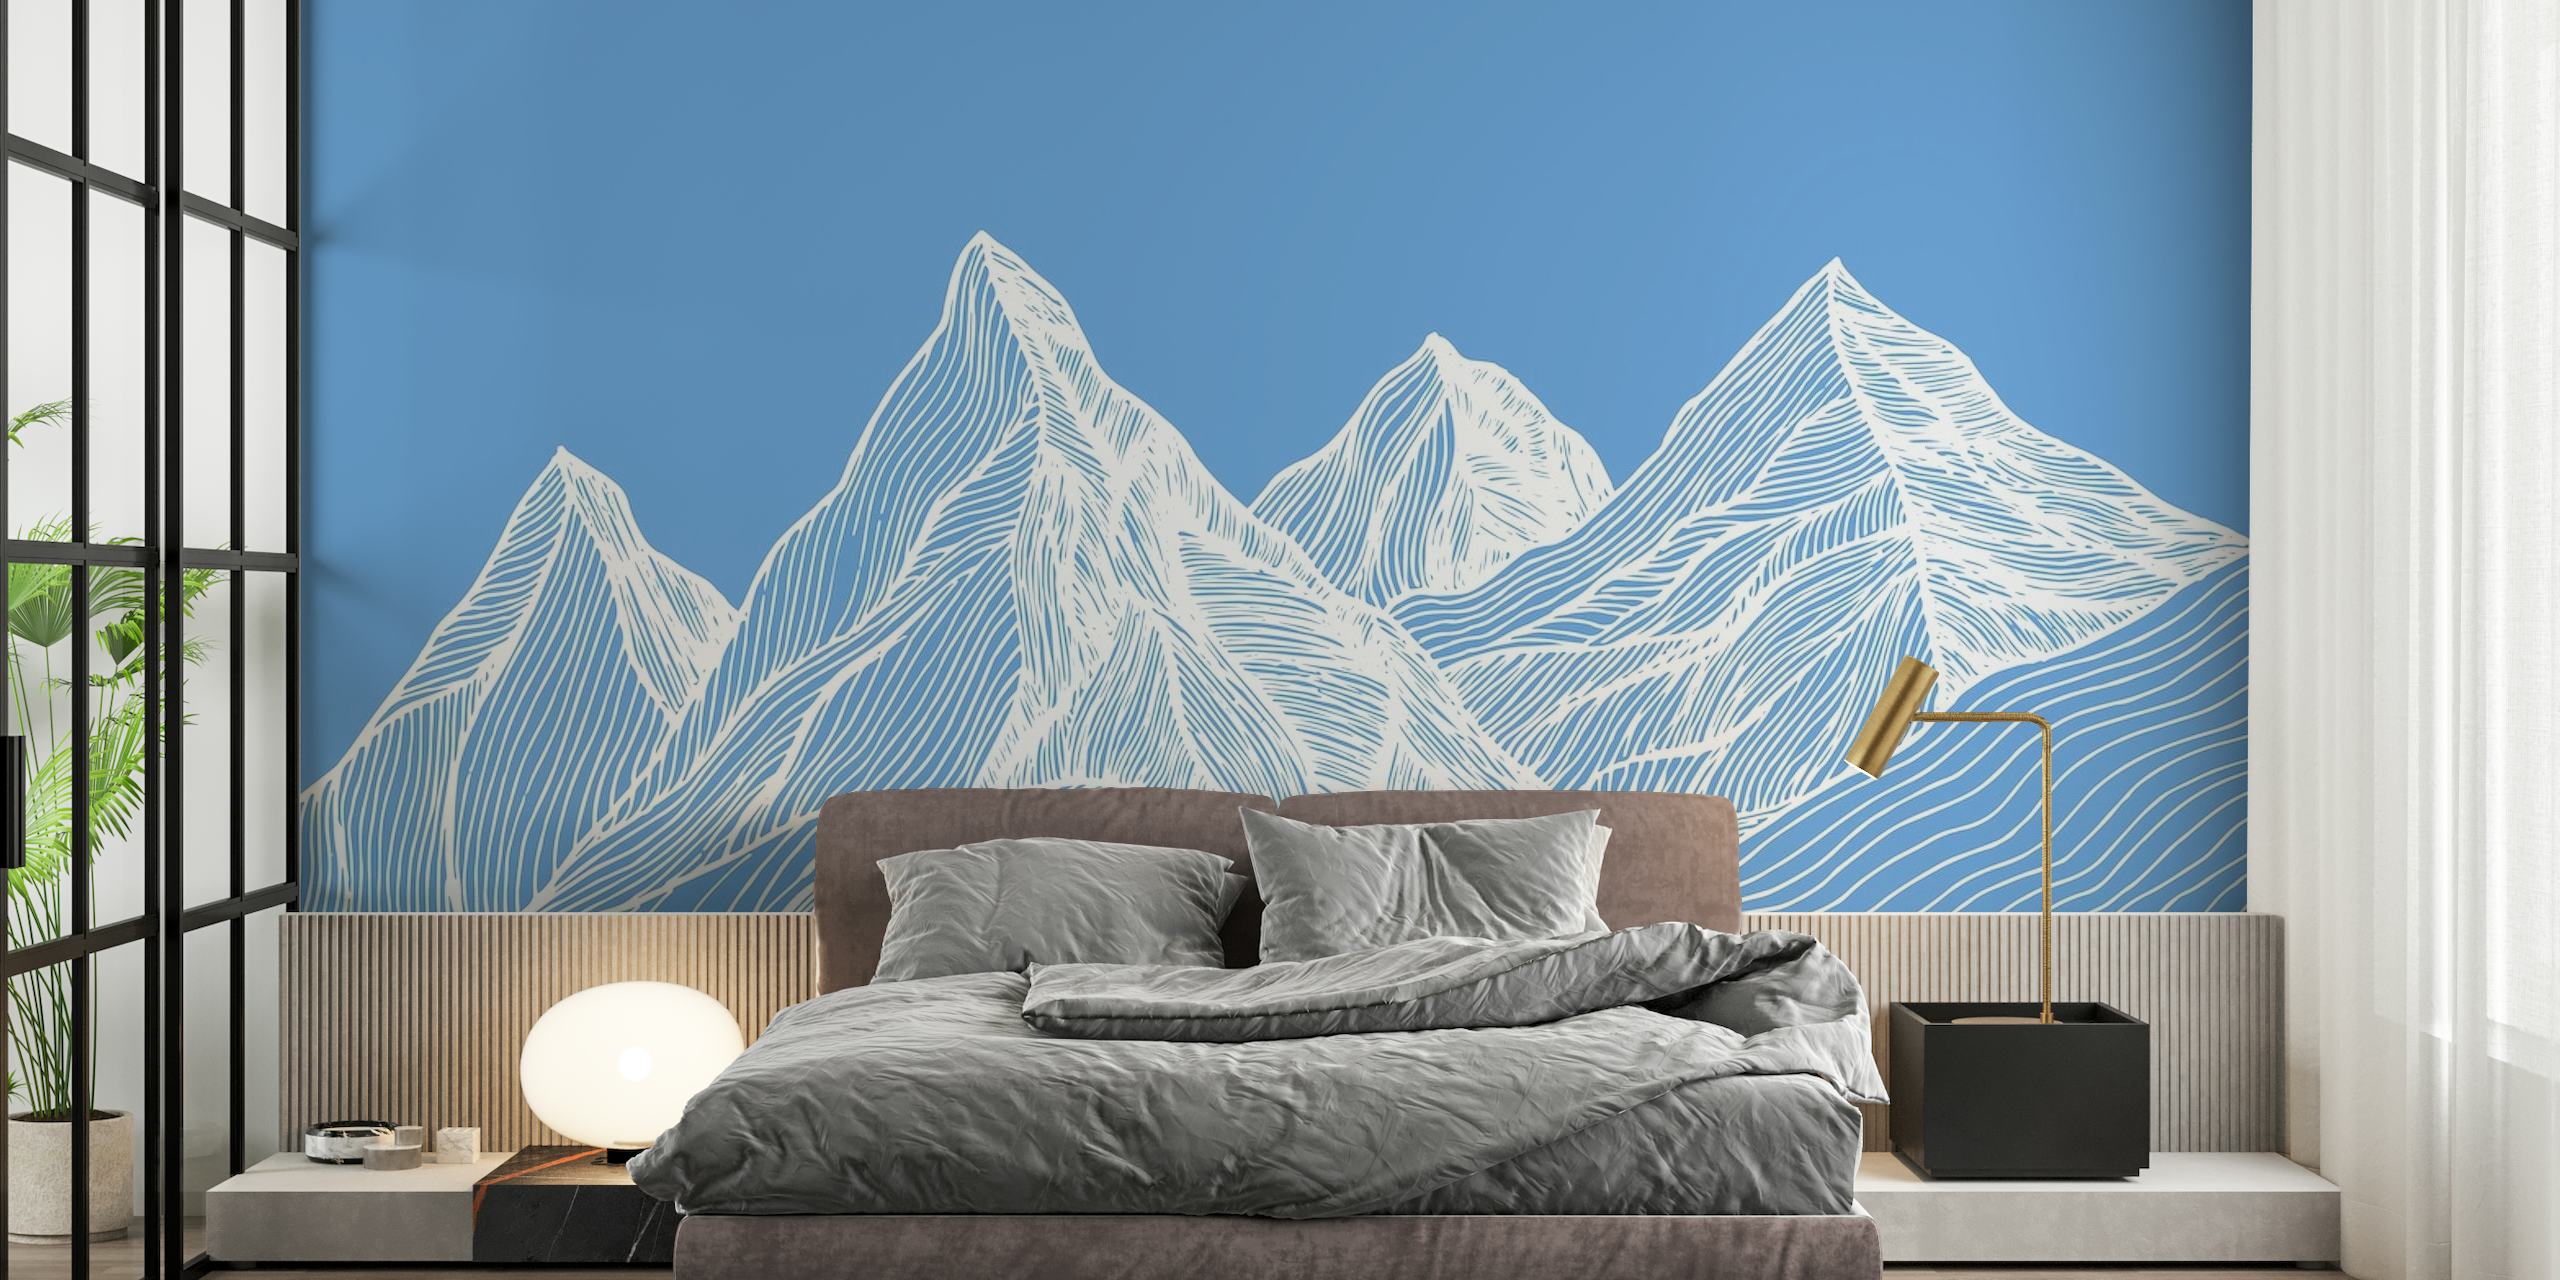 Line art mountains wallpaper